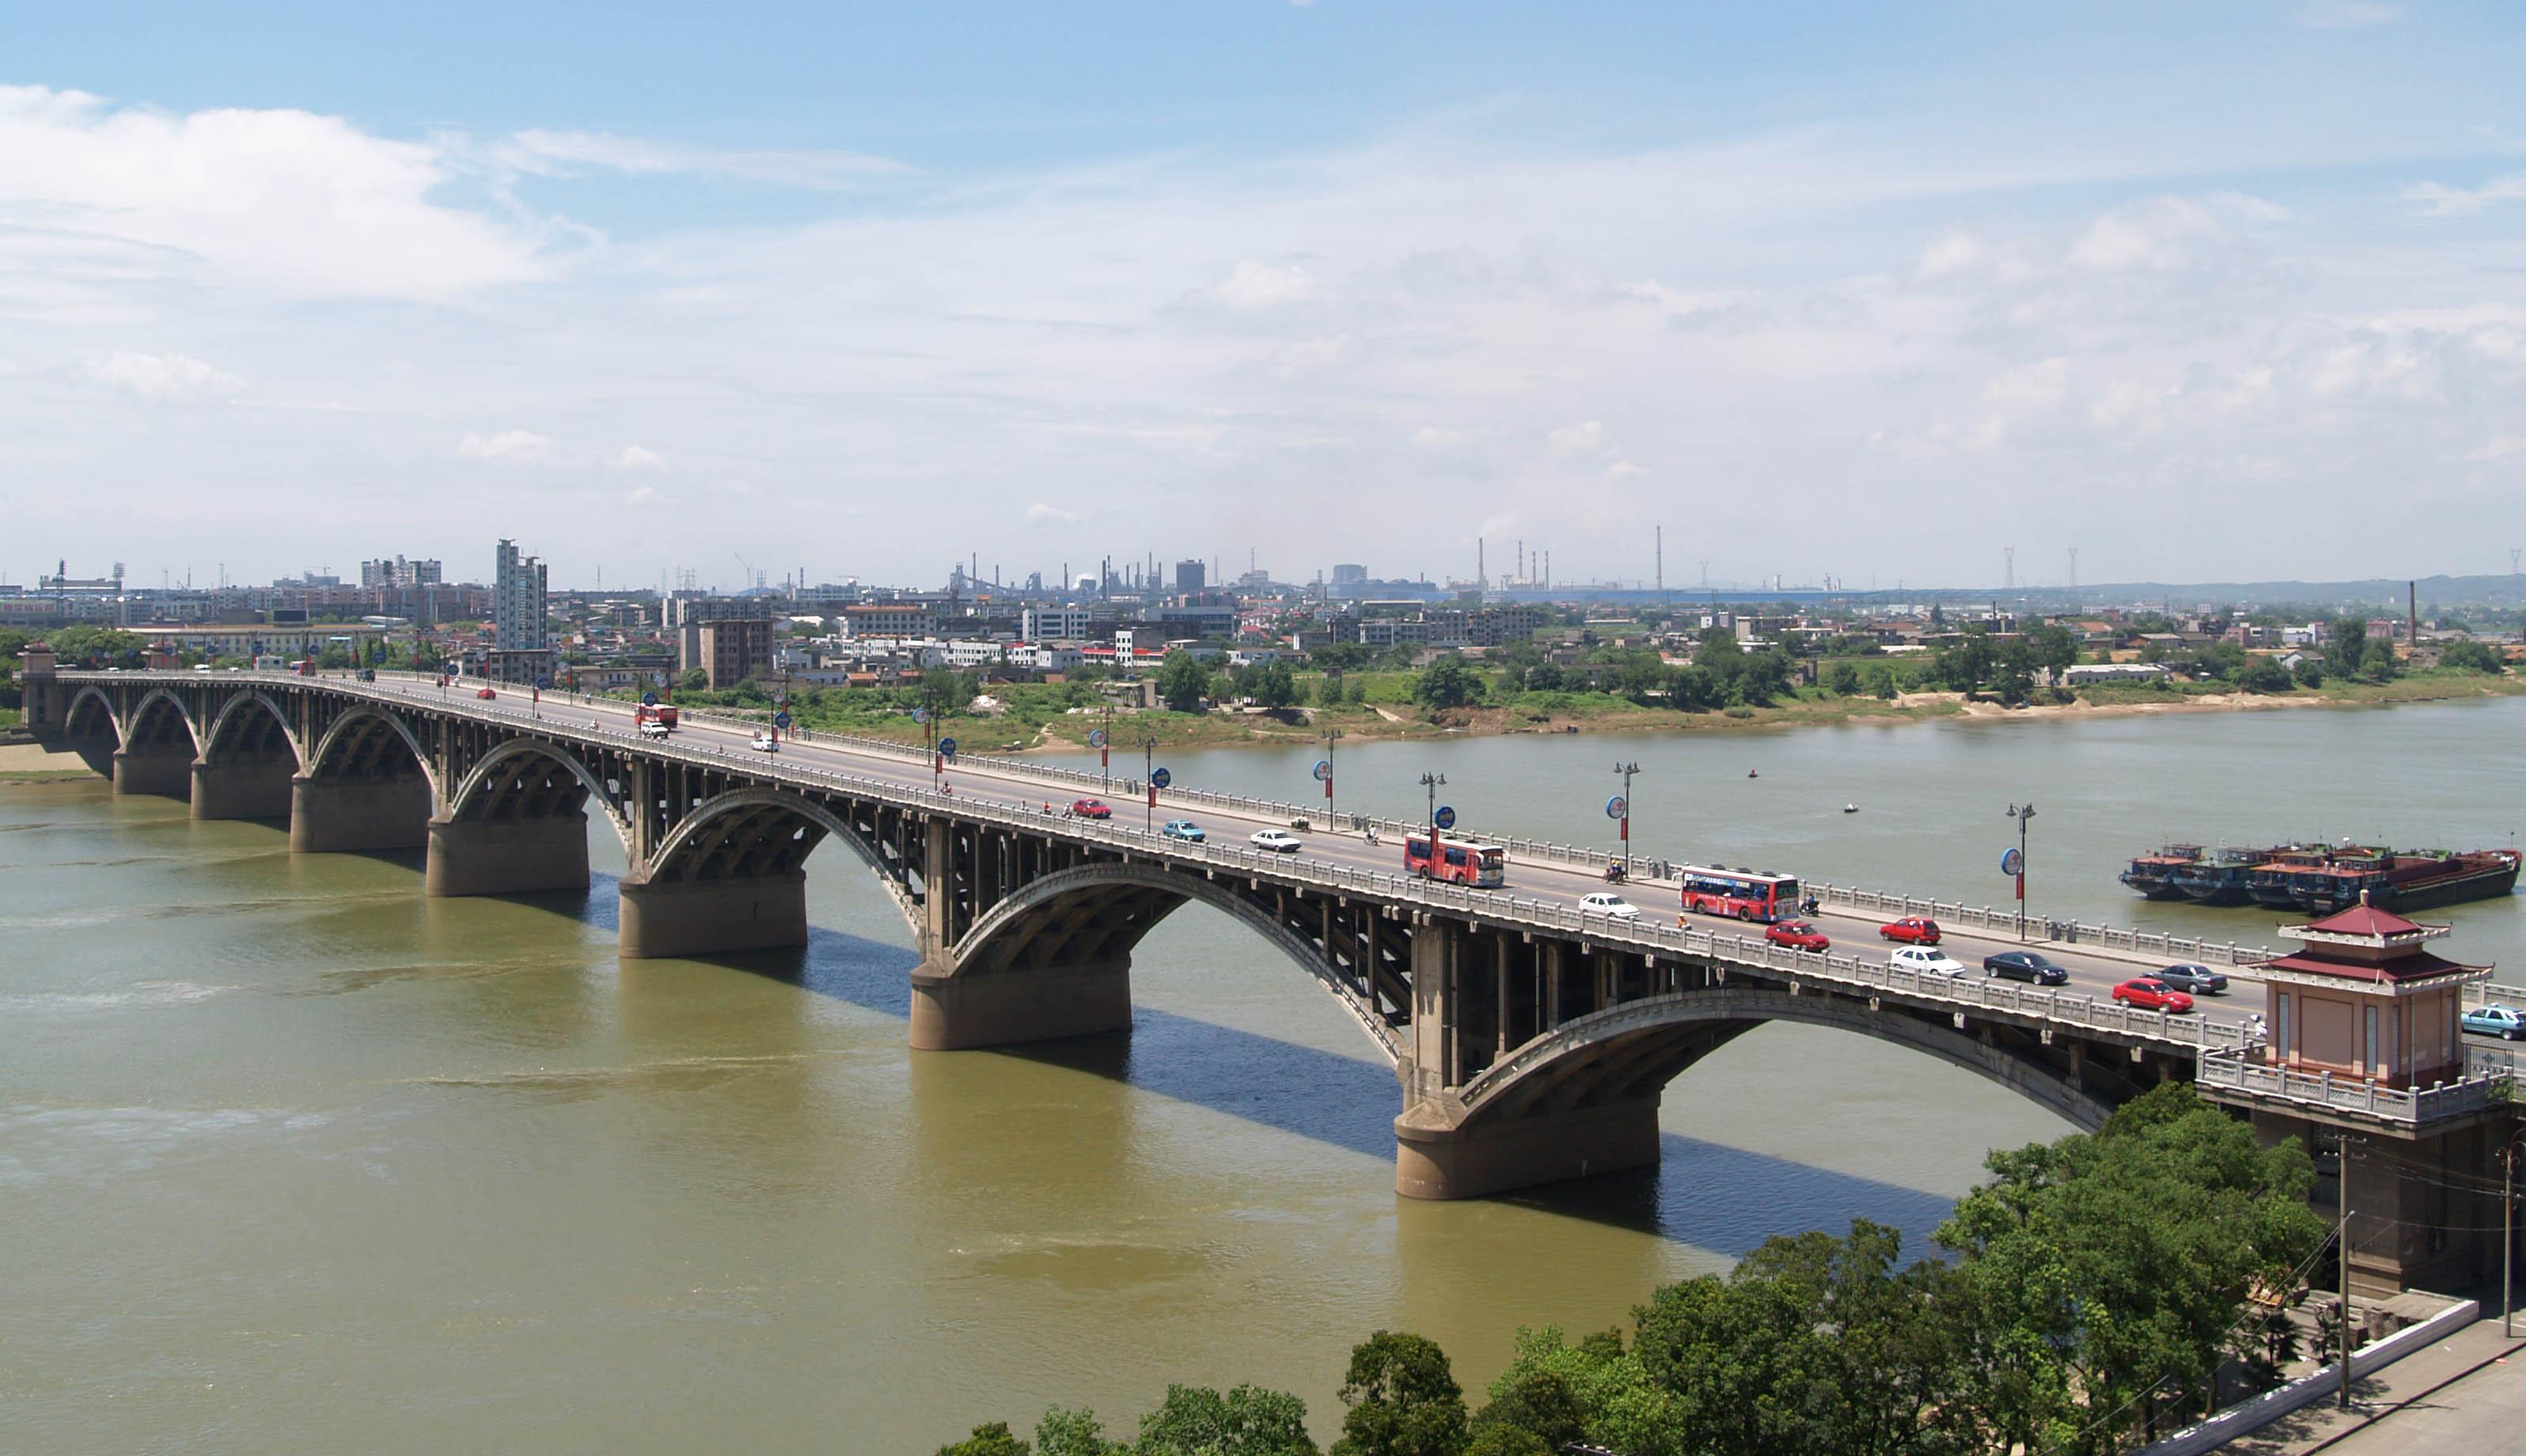 公司承建的湘潭一大橋工程被譽為“千里湘江第一橋”，比長沙市的第一座湘江大橋還早10年，一直以來是湘潭市標志性建筑